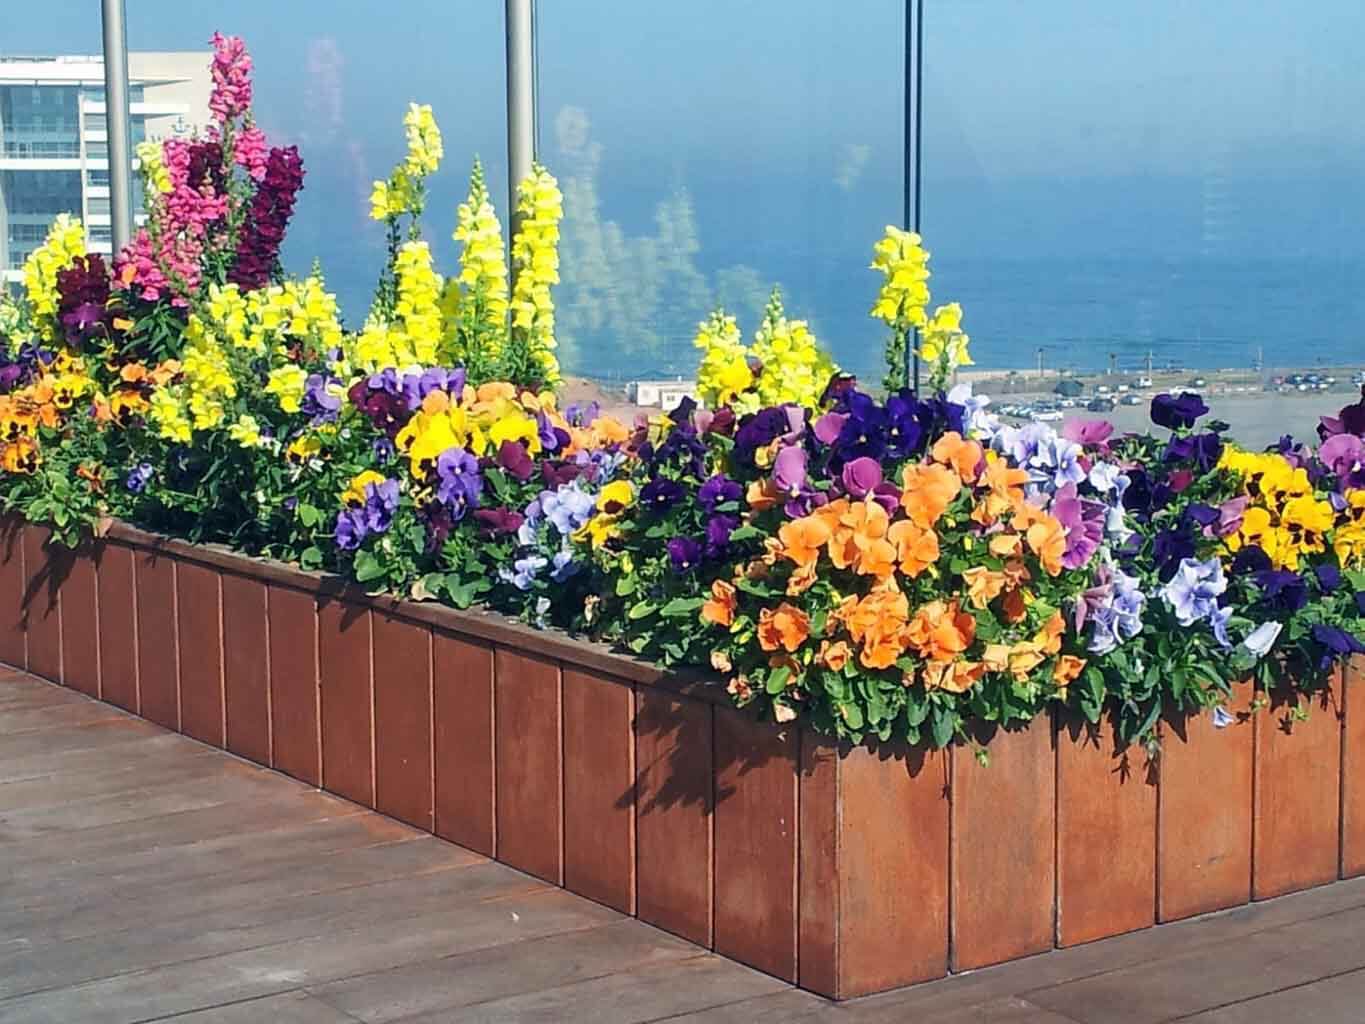 אדניות עם פרחים צבעוניים בגינת גג על מרפסת 10 מטר - גן בגג